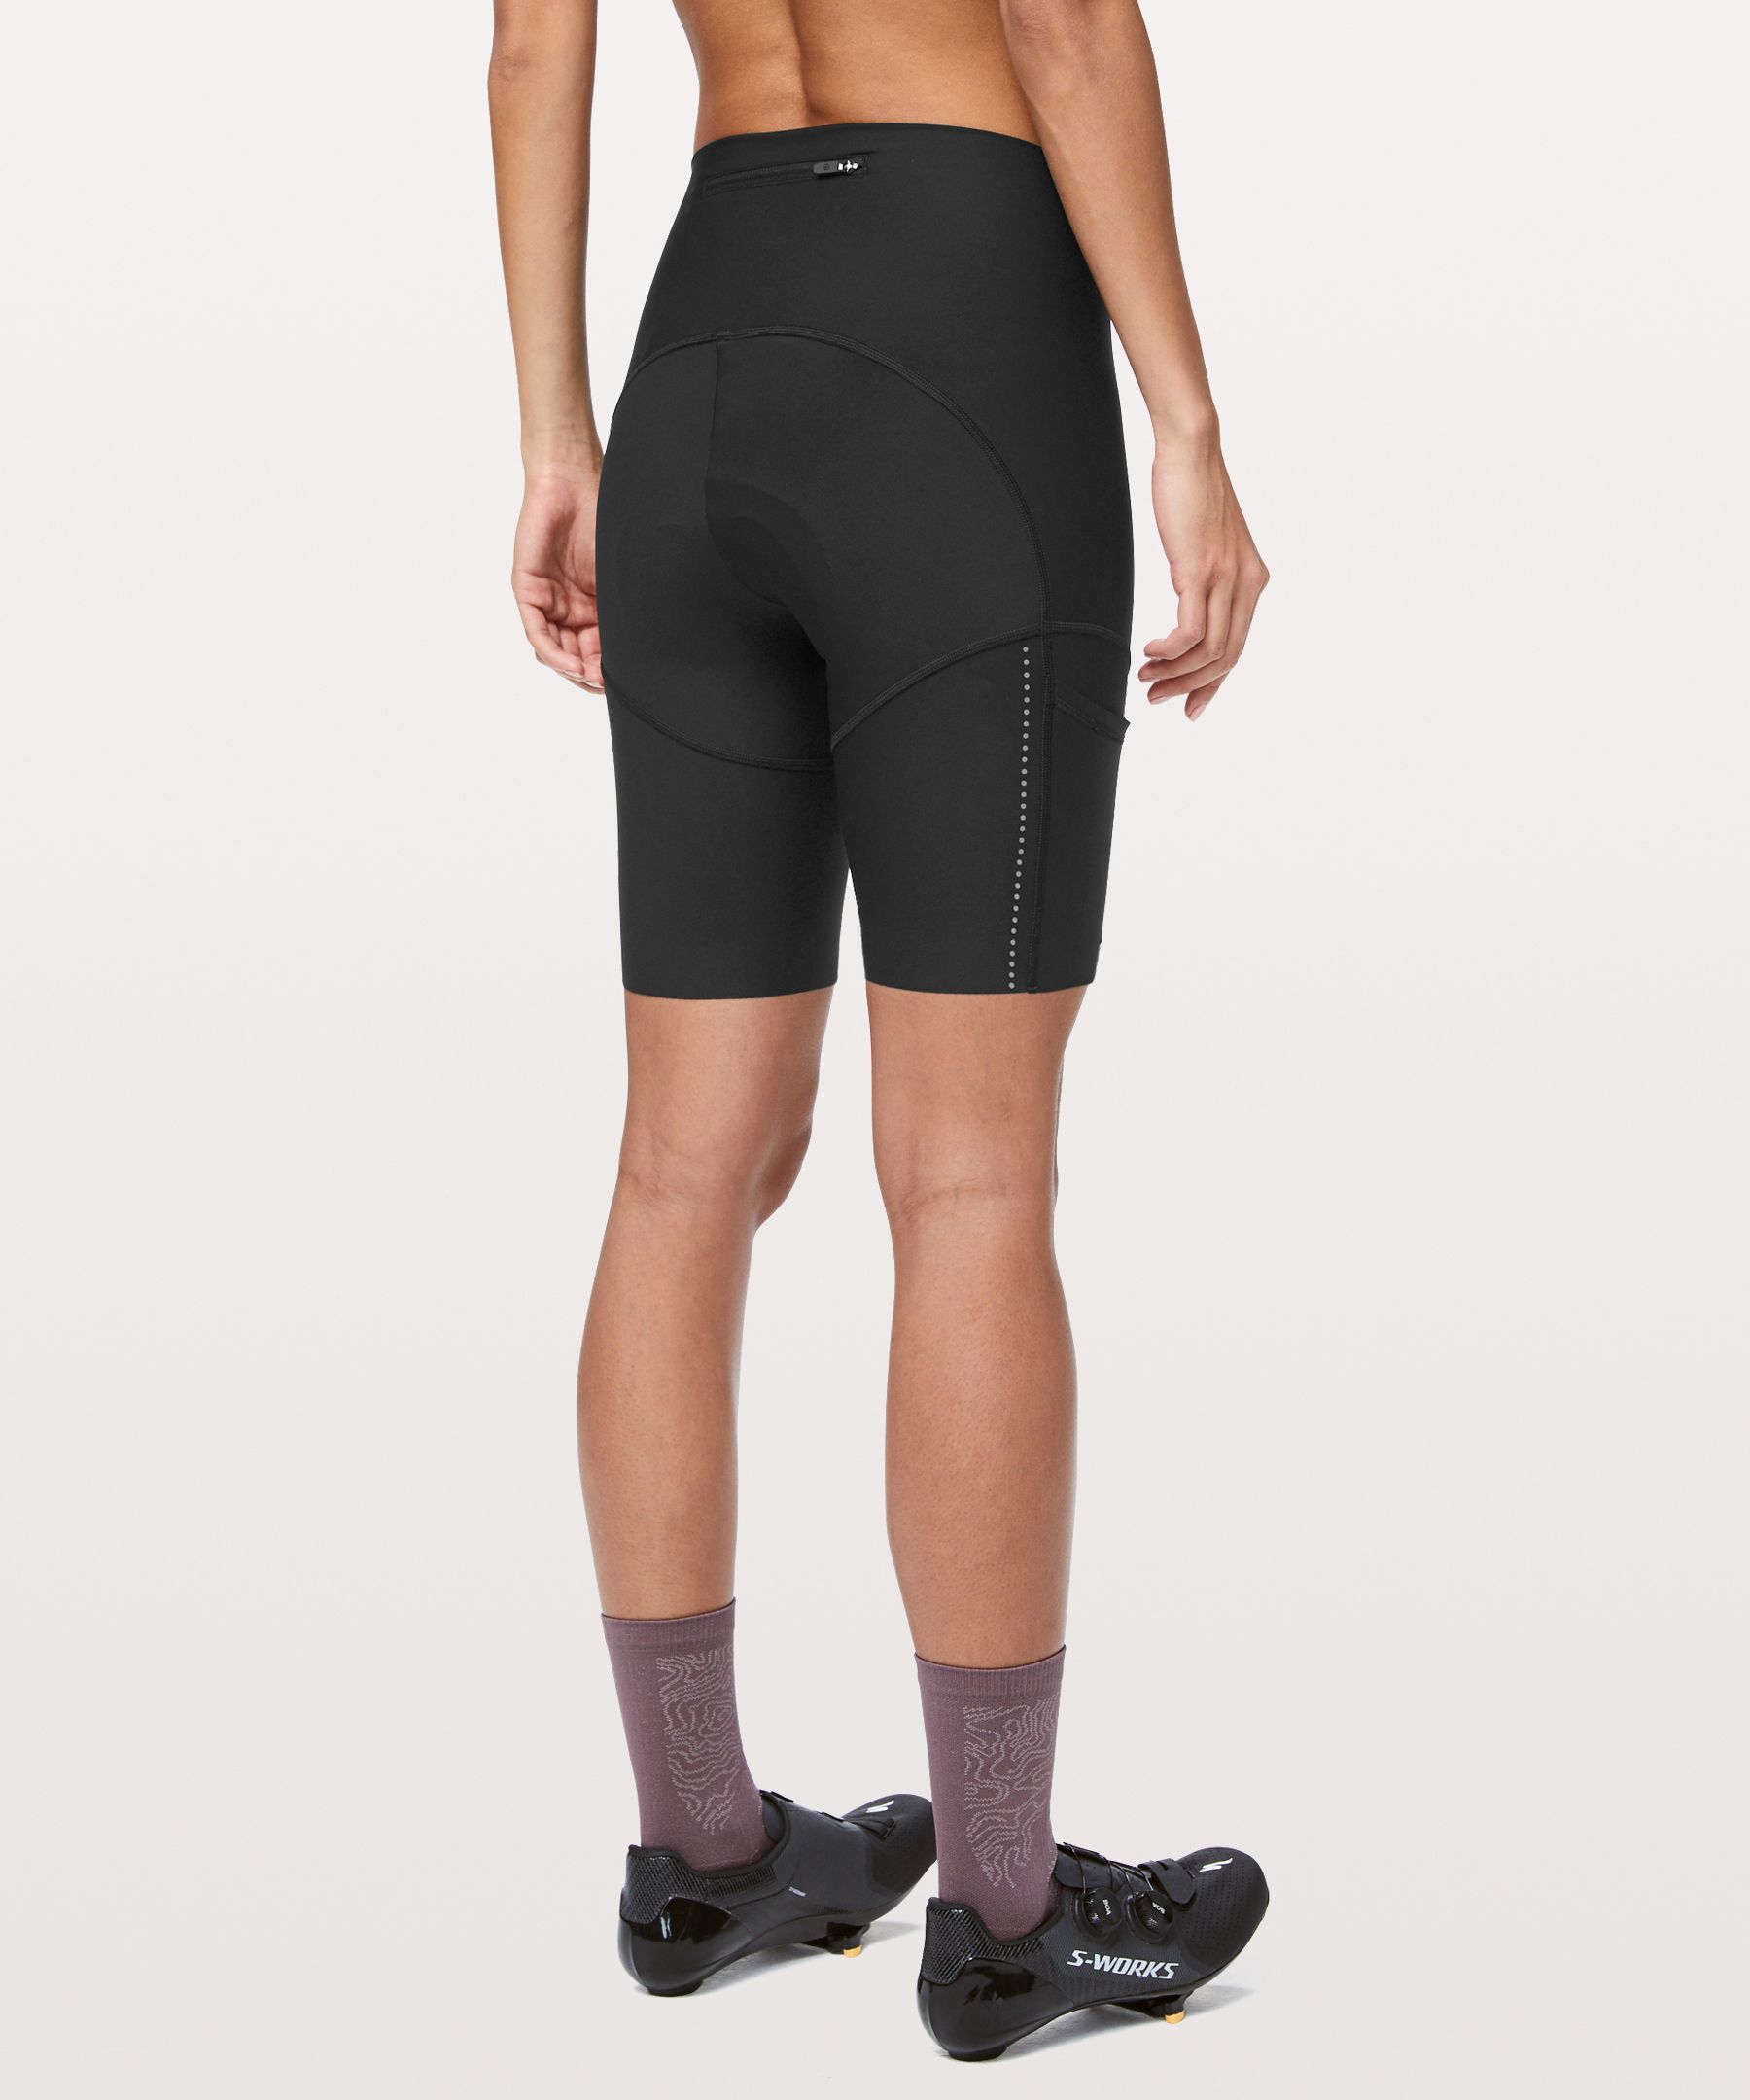 lululemon cycling shorts